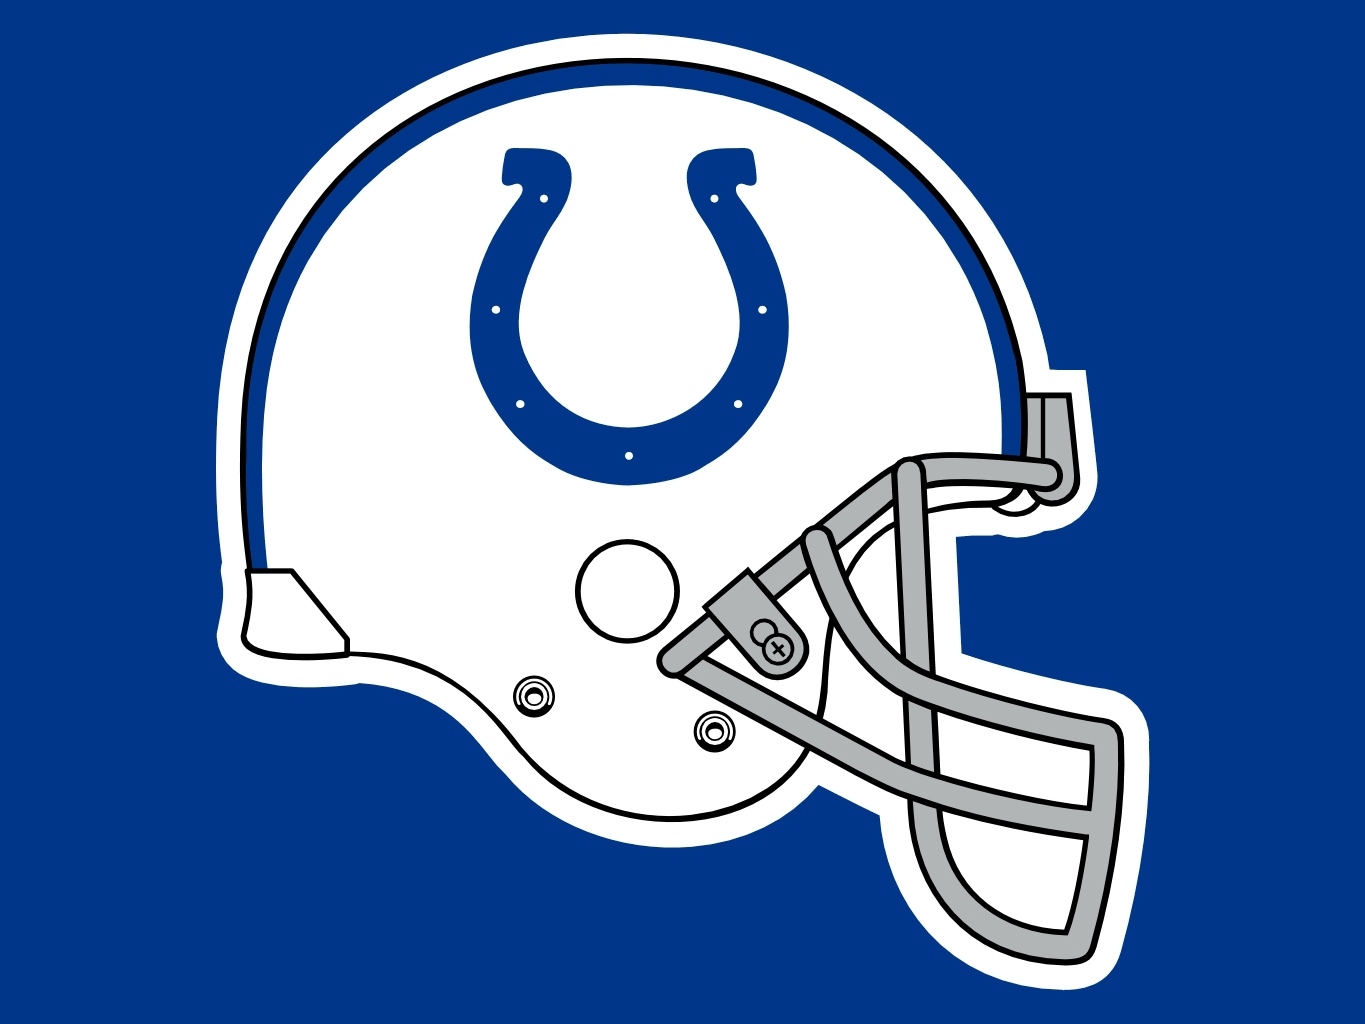 Colts Logo Transparent Indianapolis Horseshoe